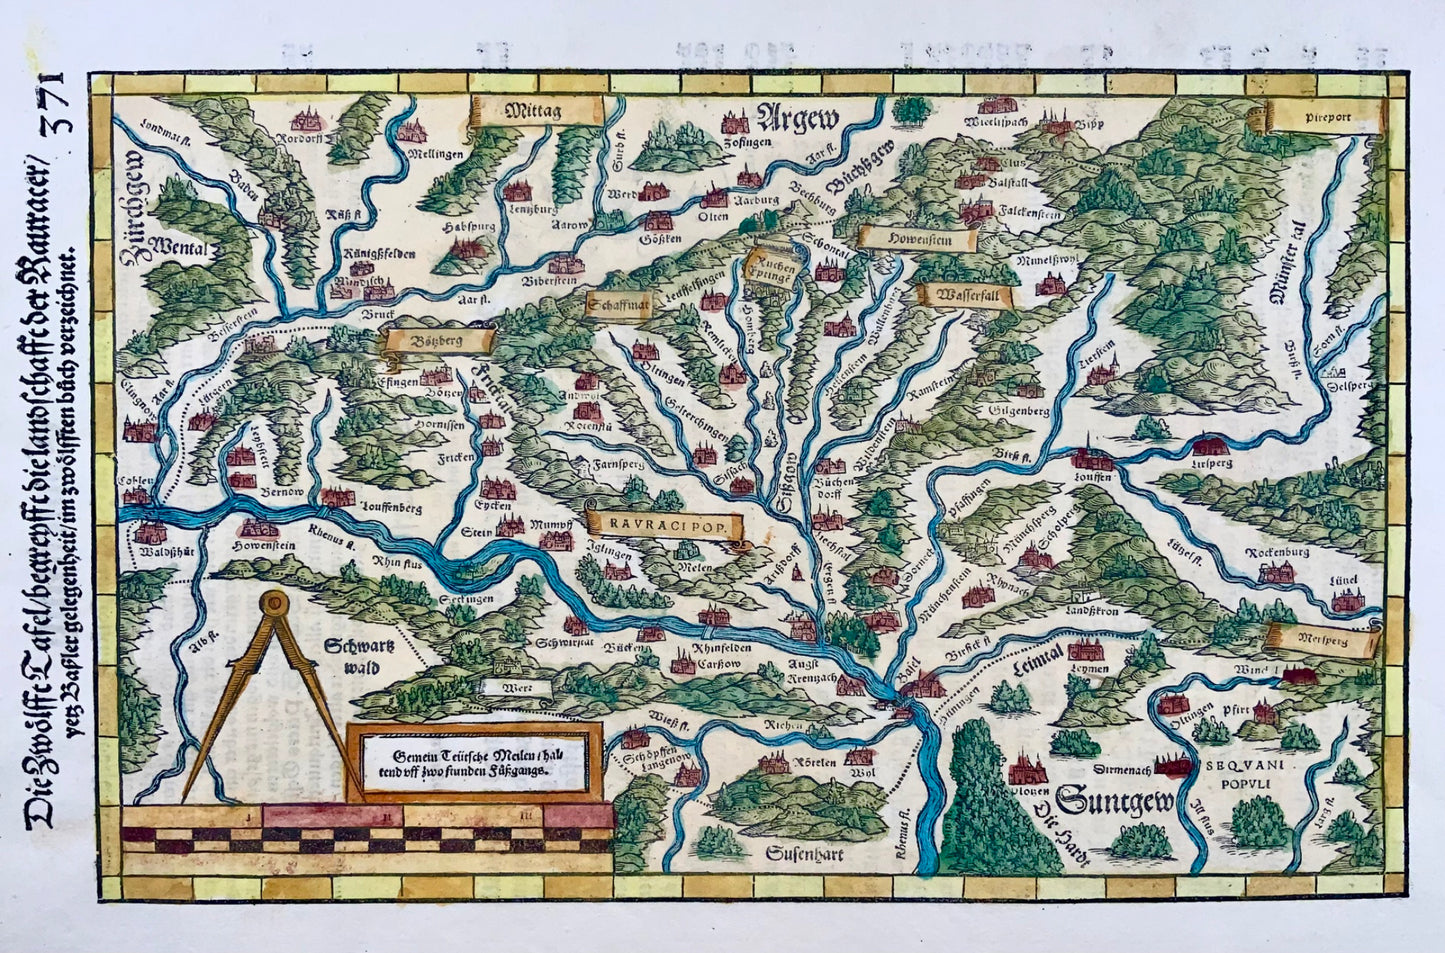 1548 Joh. Stumpf, Rhine, Germany, Switzerland, folio woodcut map